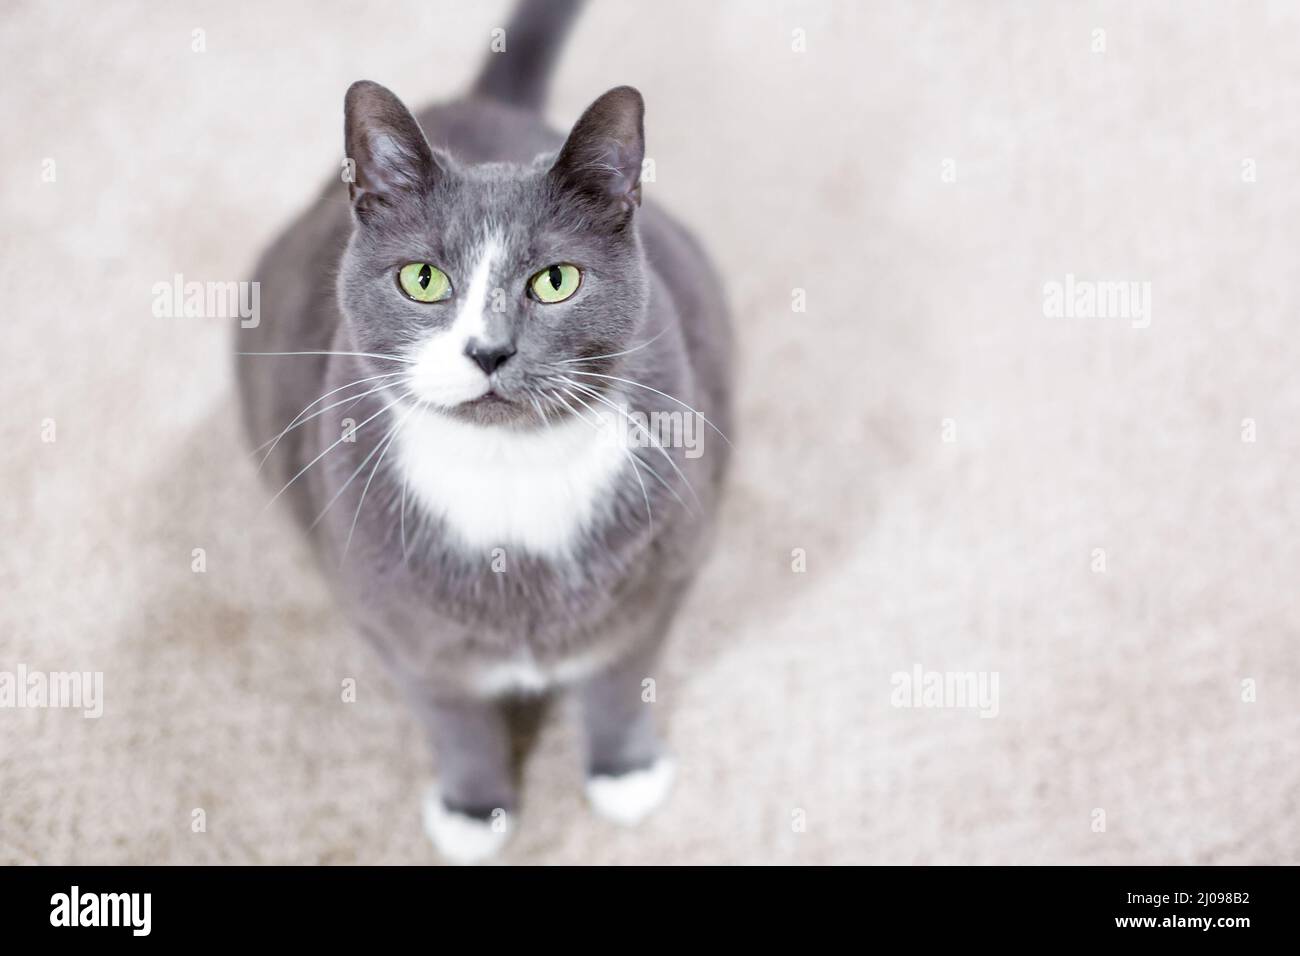 Un gato shorthair gris y blanco con ojos verdes mirando hacia la cámara Foto de stock